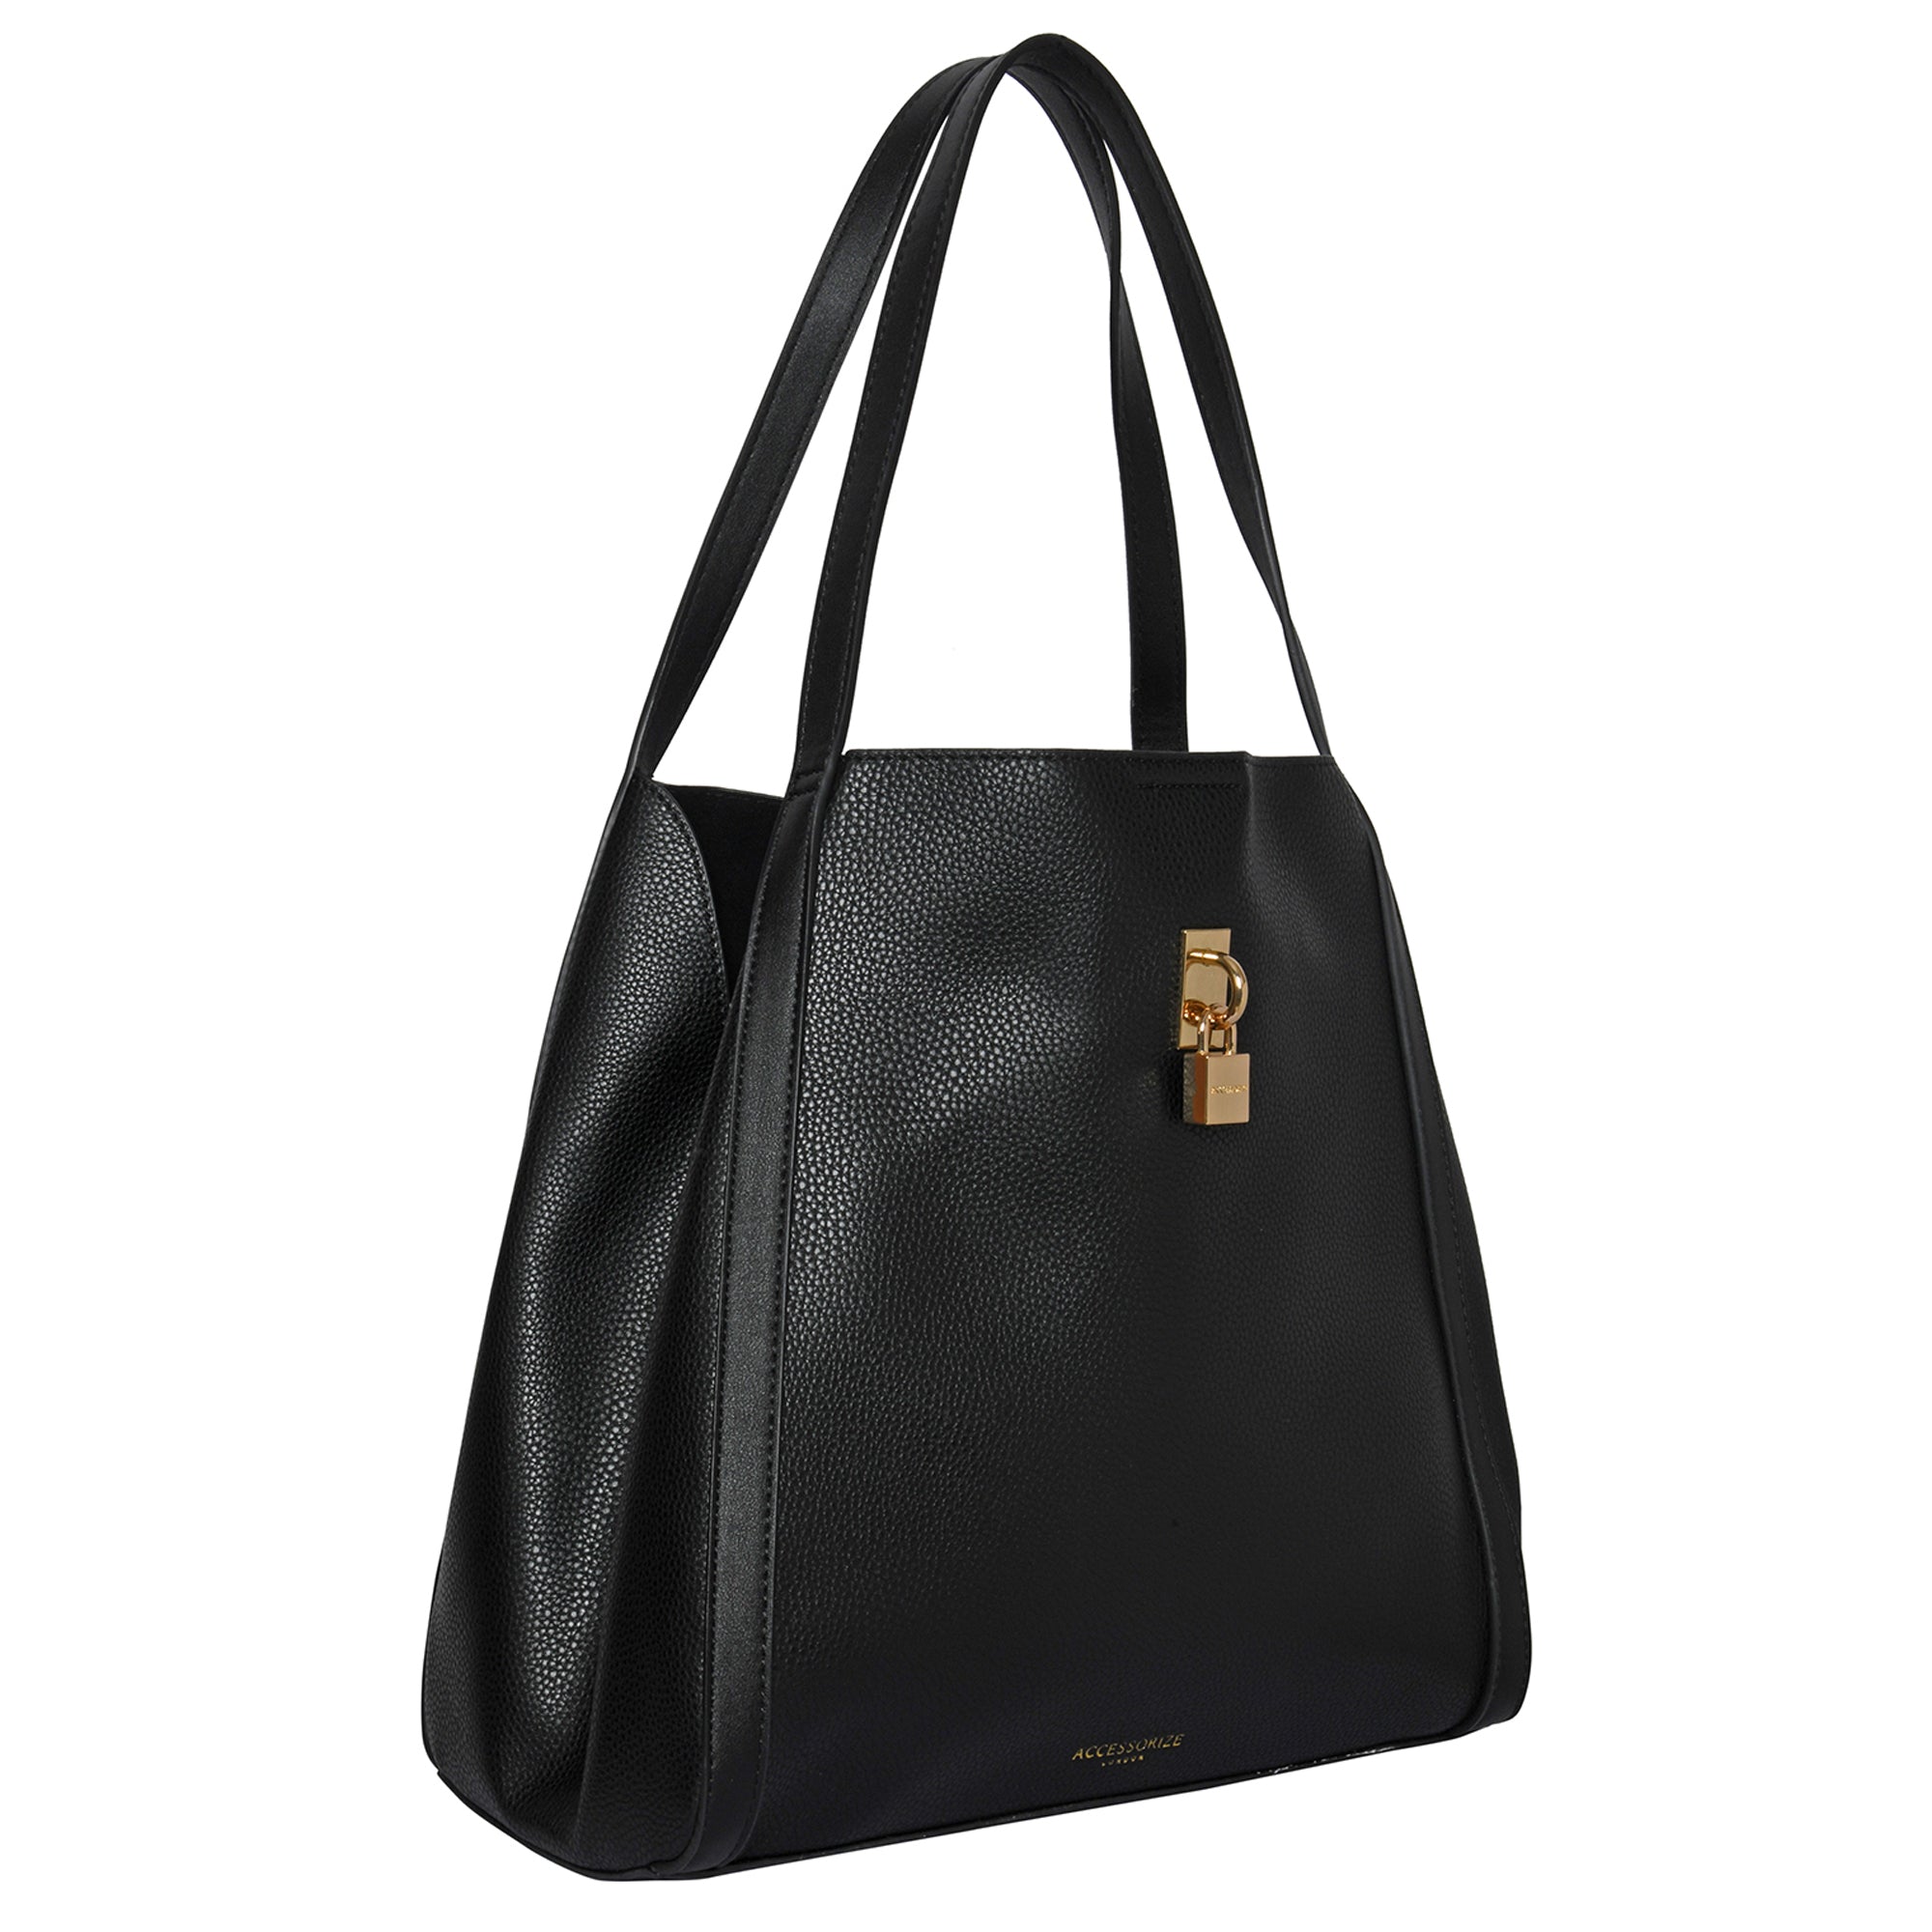 Accessorize London Women's Faux Leather Black Padlock Shoulder Bag